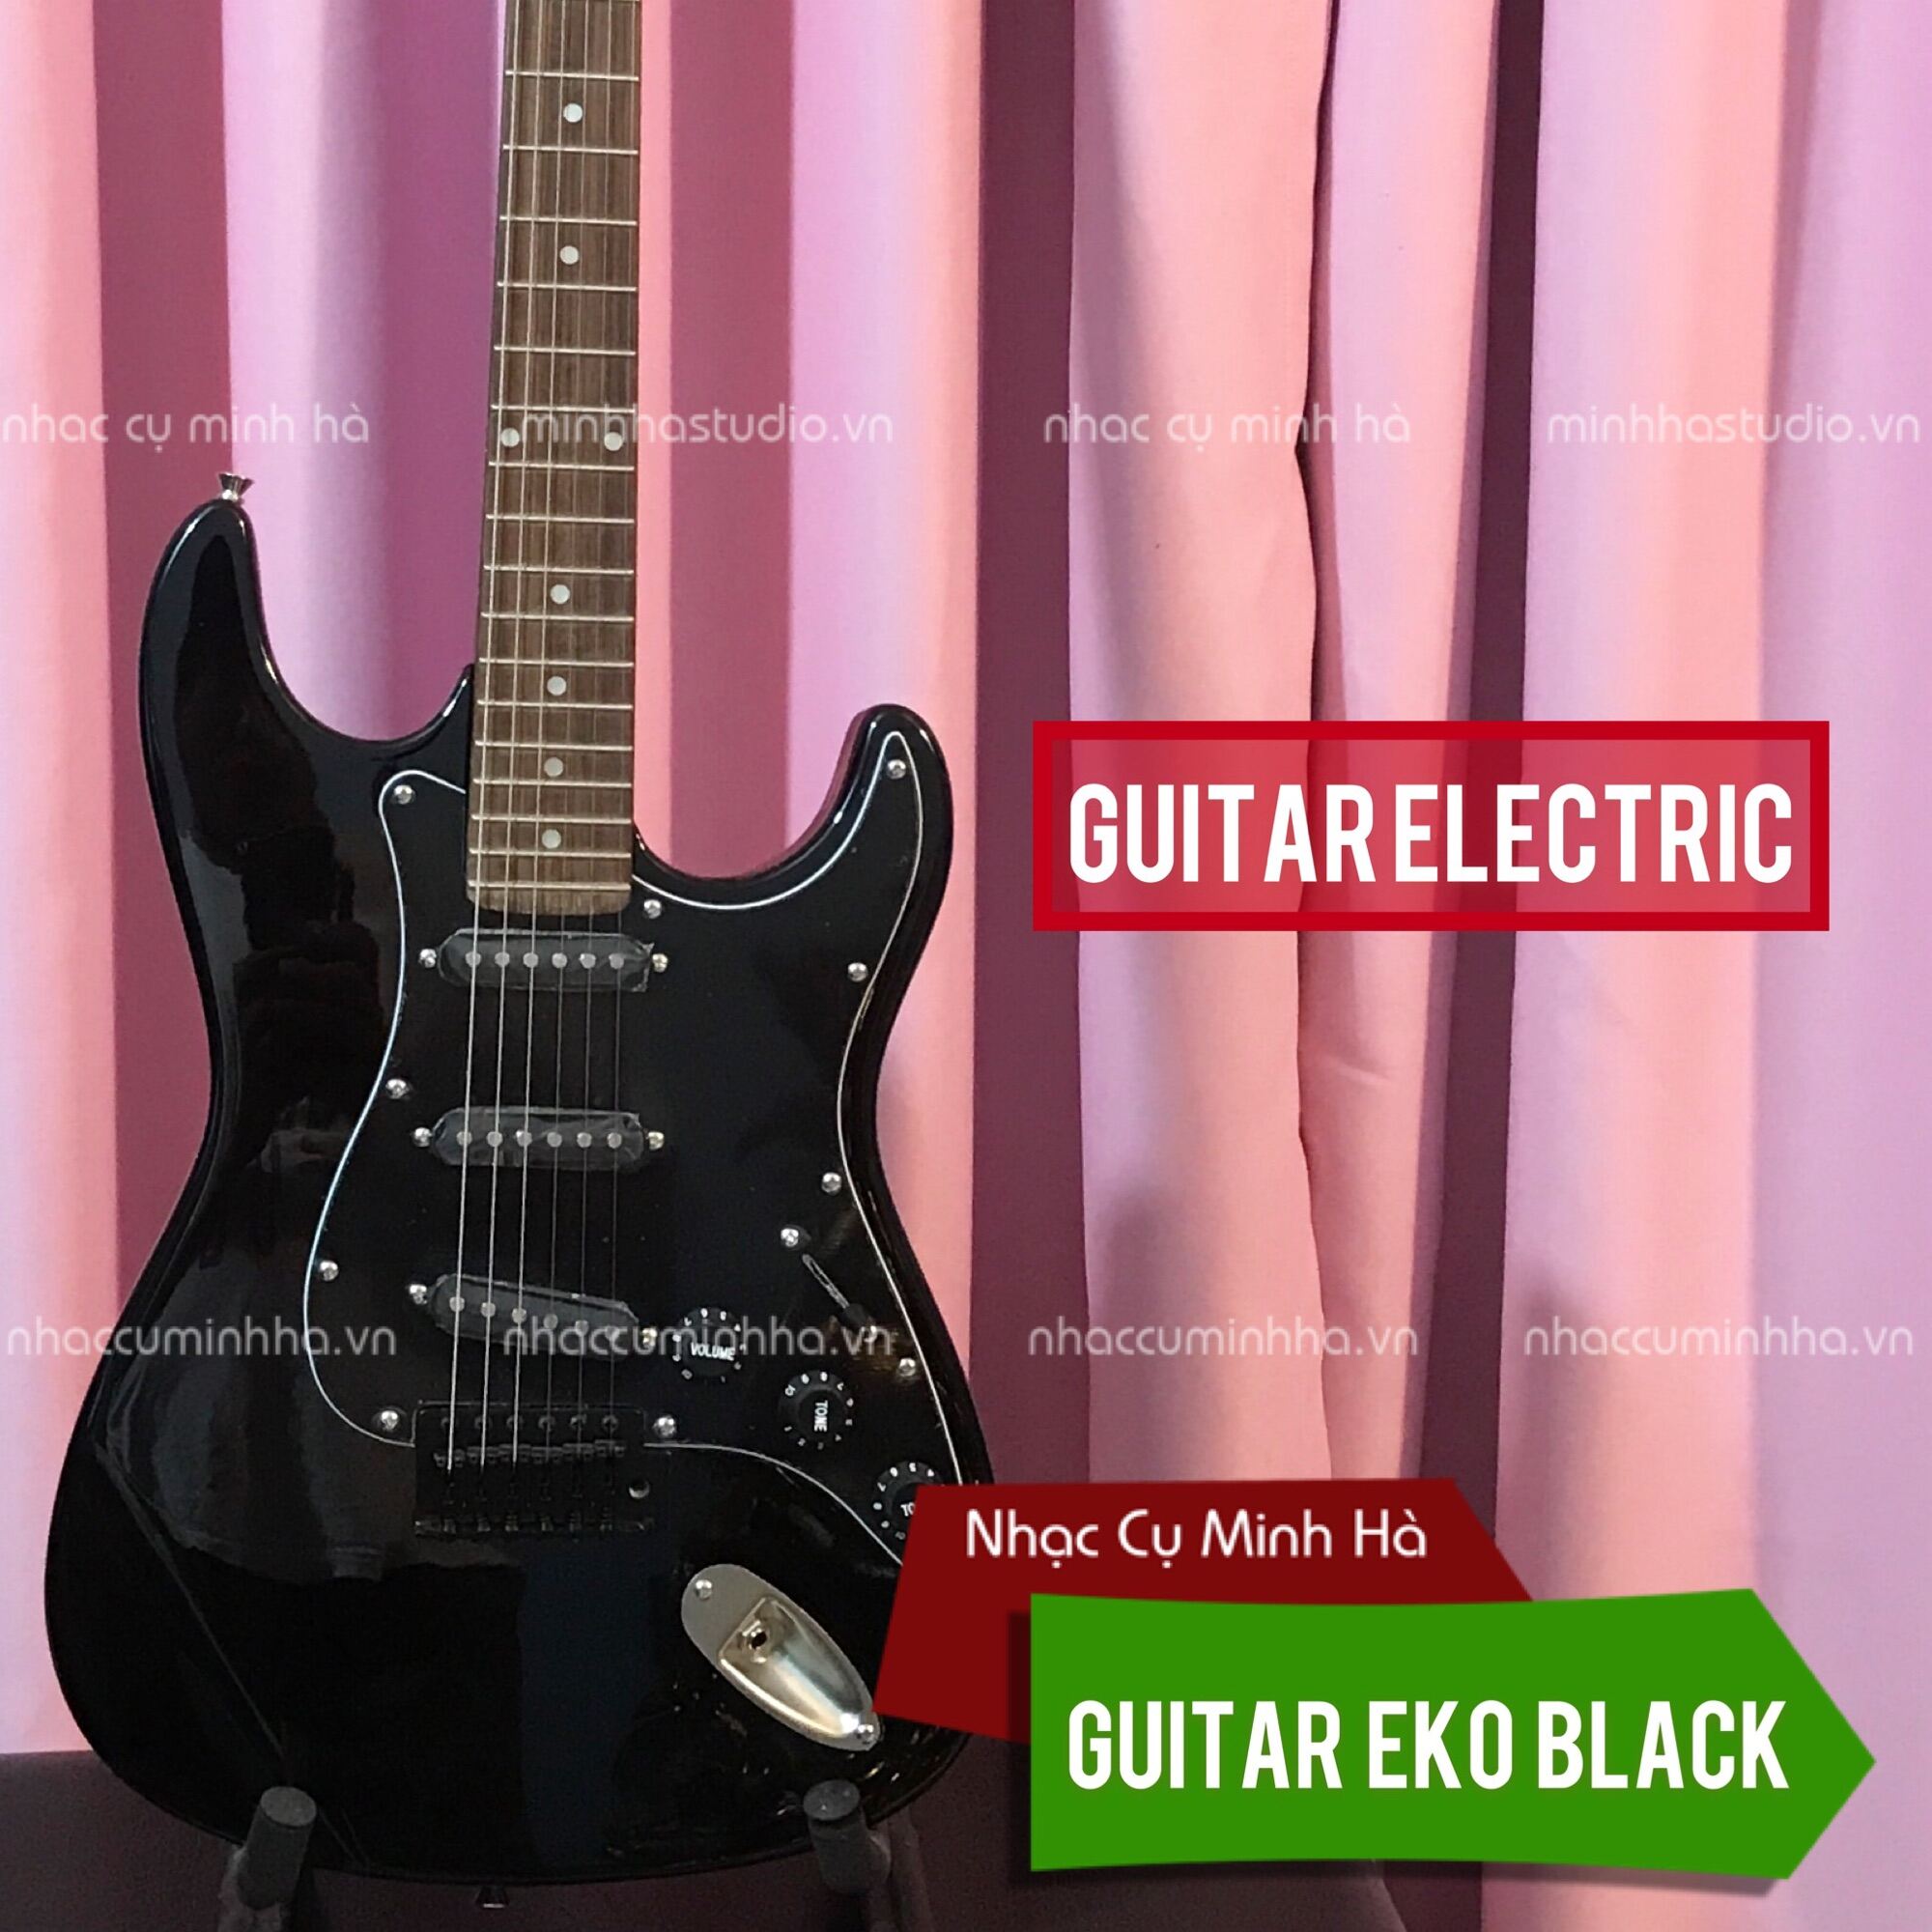 Guitar Electric EKO giá rẻ chất lượng cao, xuất xứ Indonesia